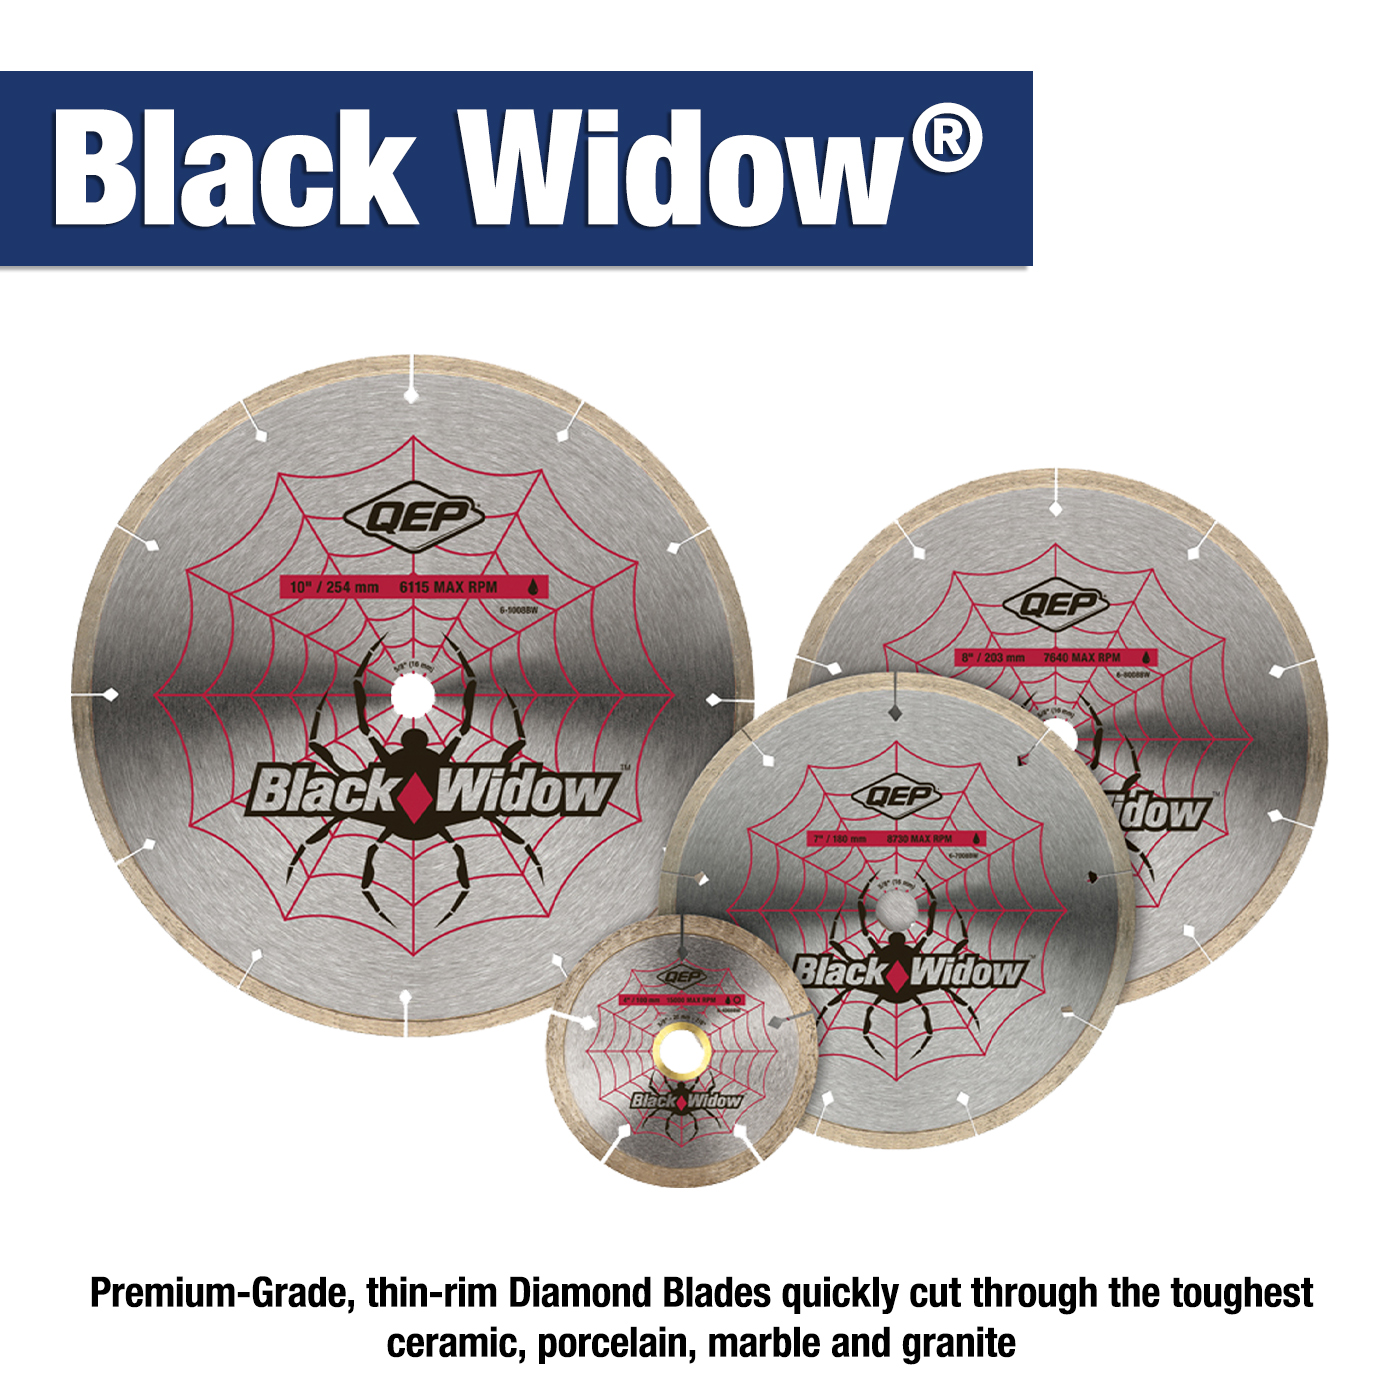 Black Widow® Blades